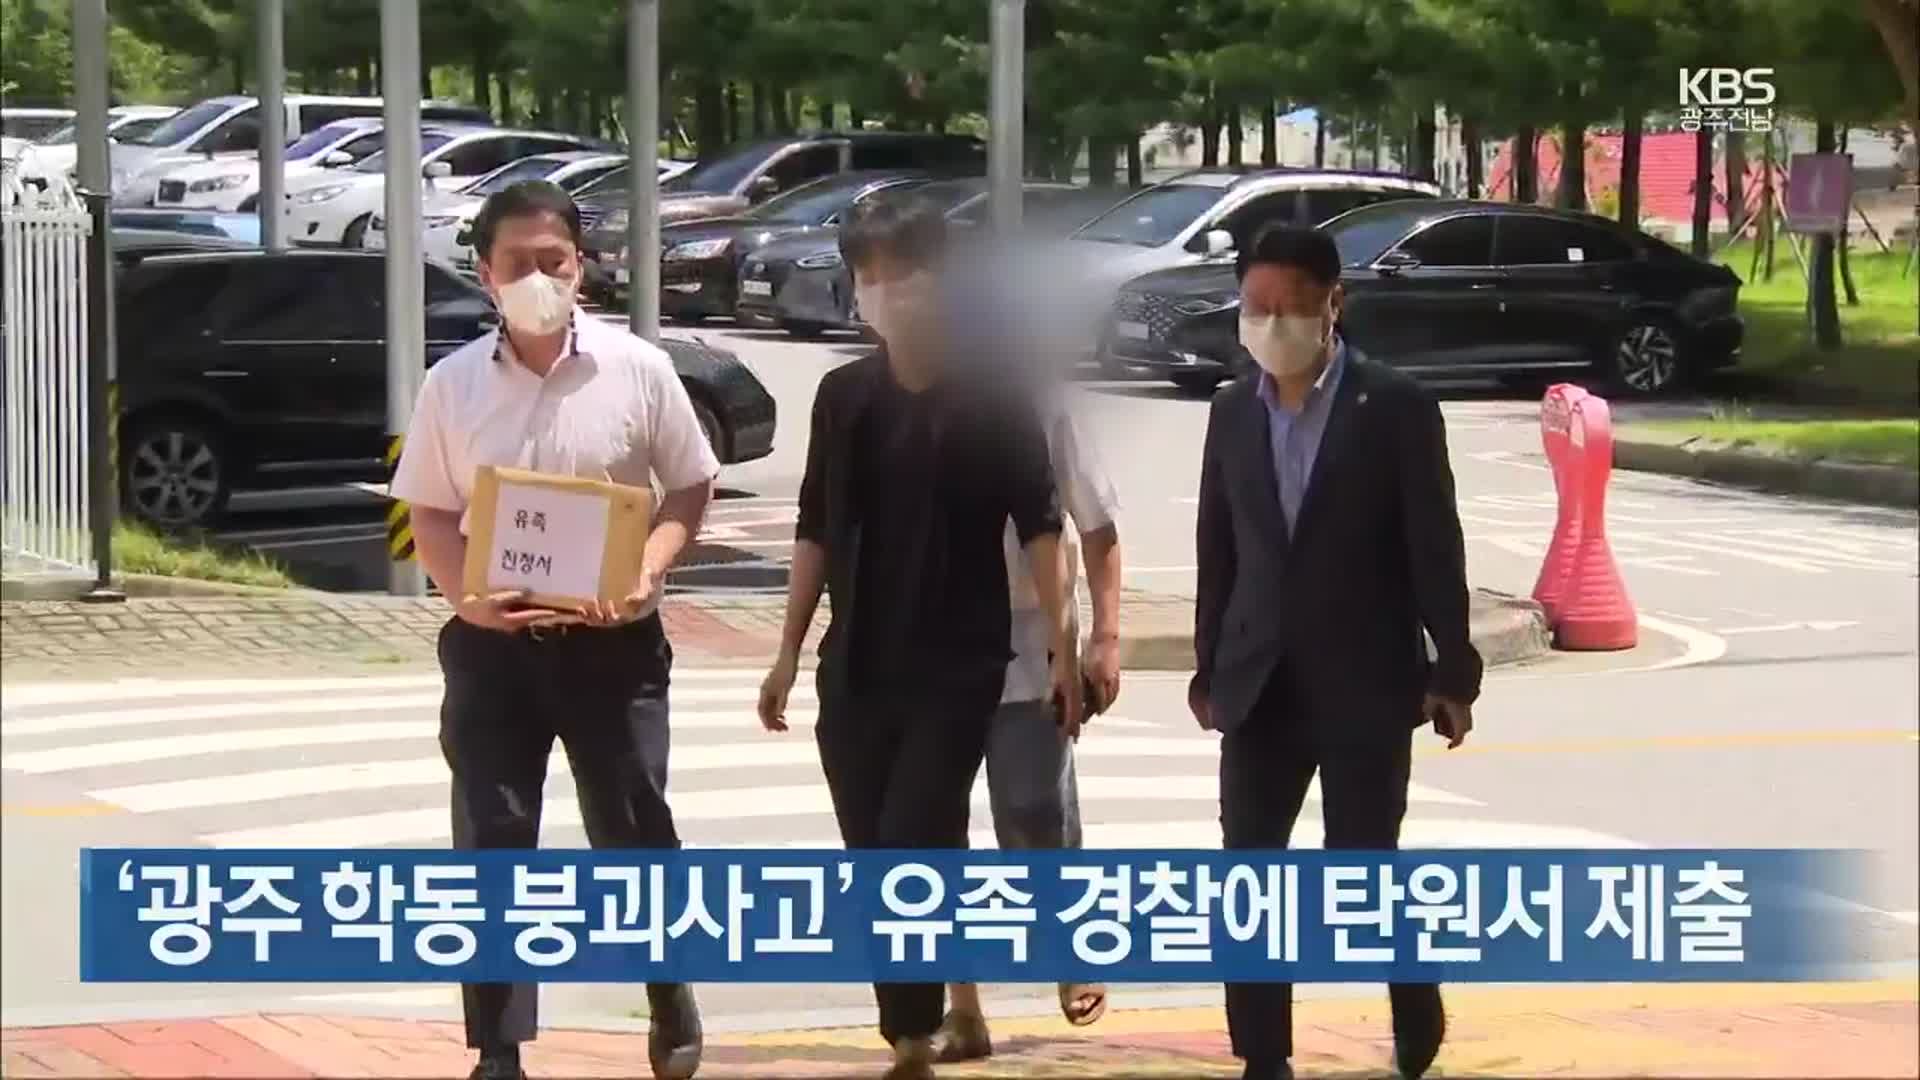 [간추린 뉴스] ‘광주 학동 붕괴사고’ 유족 경찰에 탄원서 제출 외